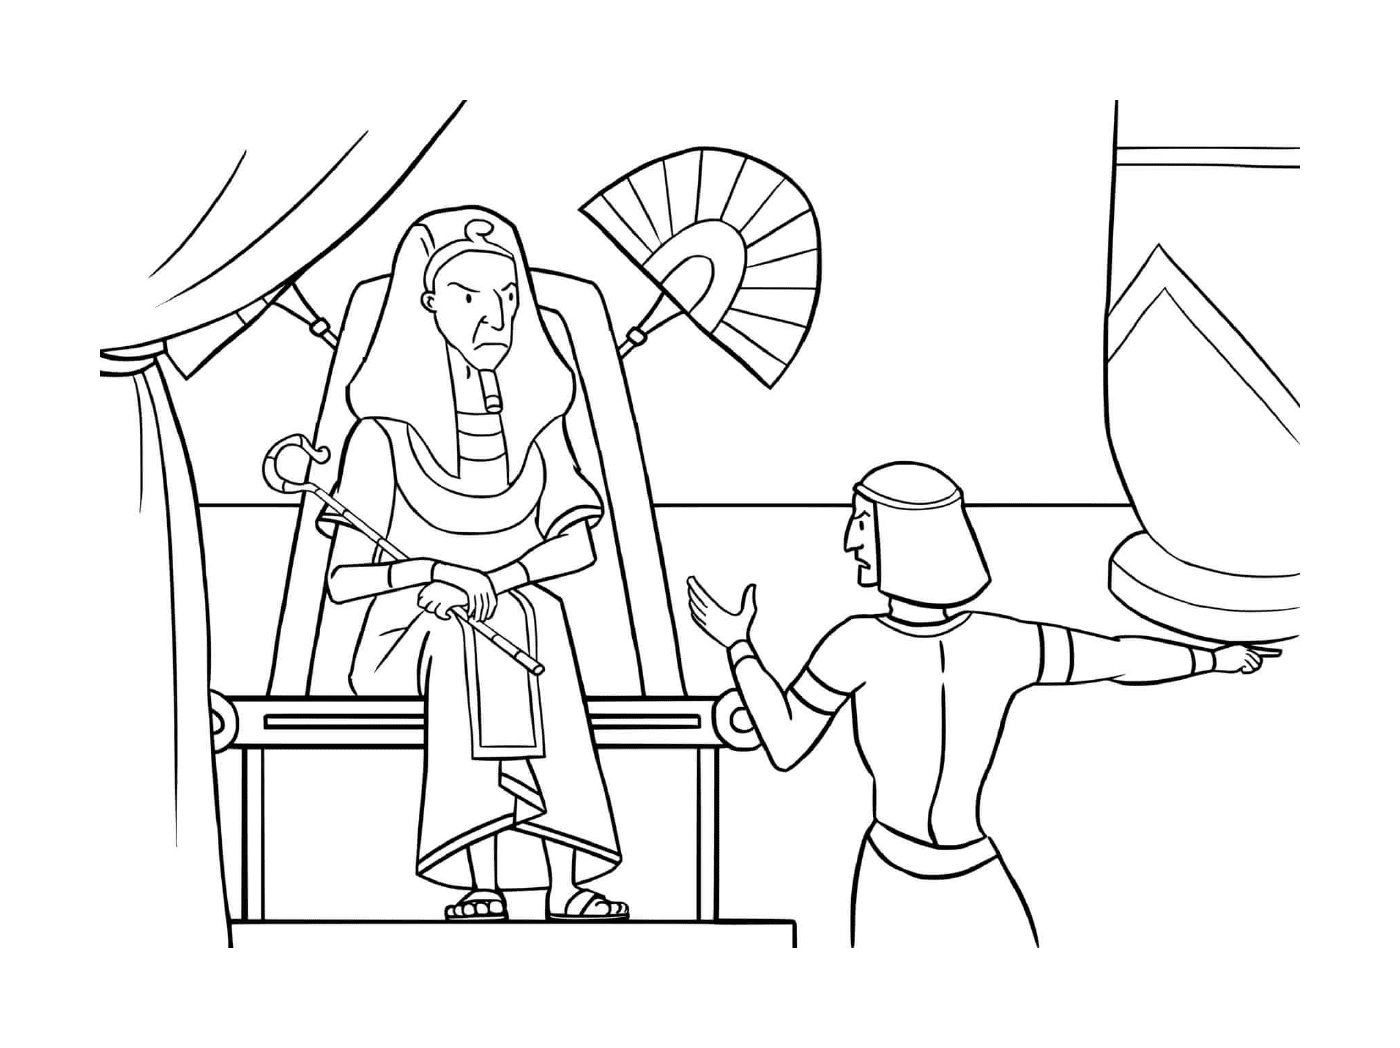  Escena del antiguo Egipto con un hombre y una mujer 